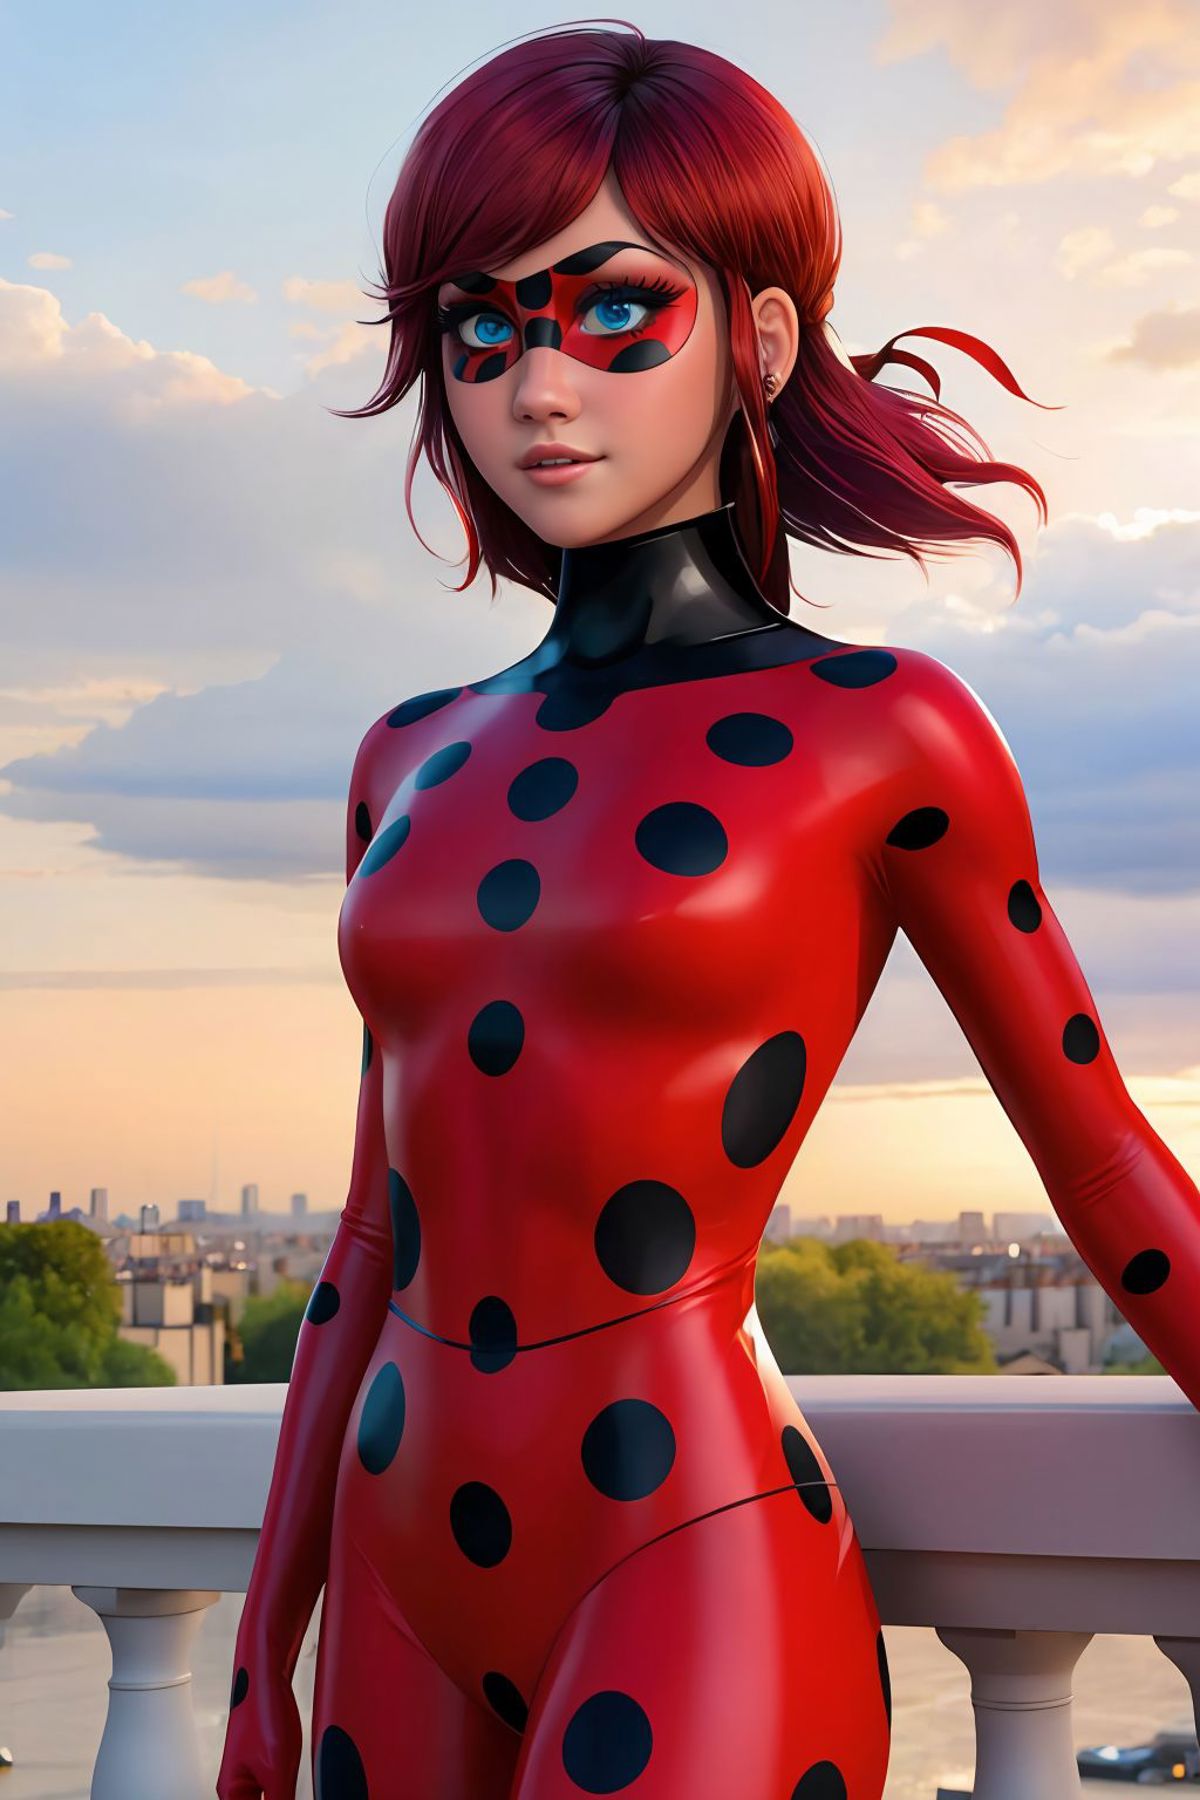 Ladybug Costume image by Montitto